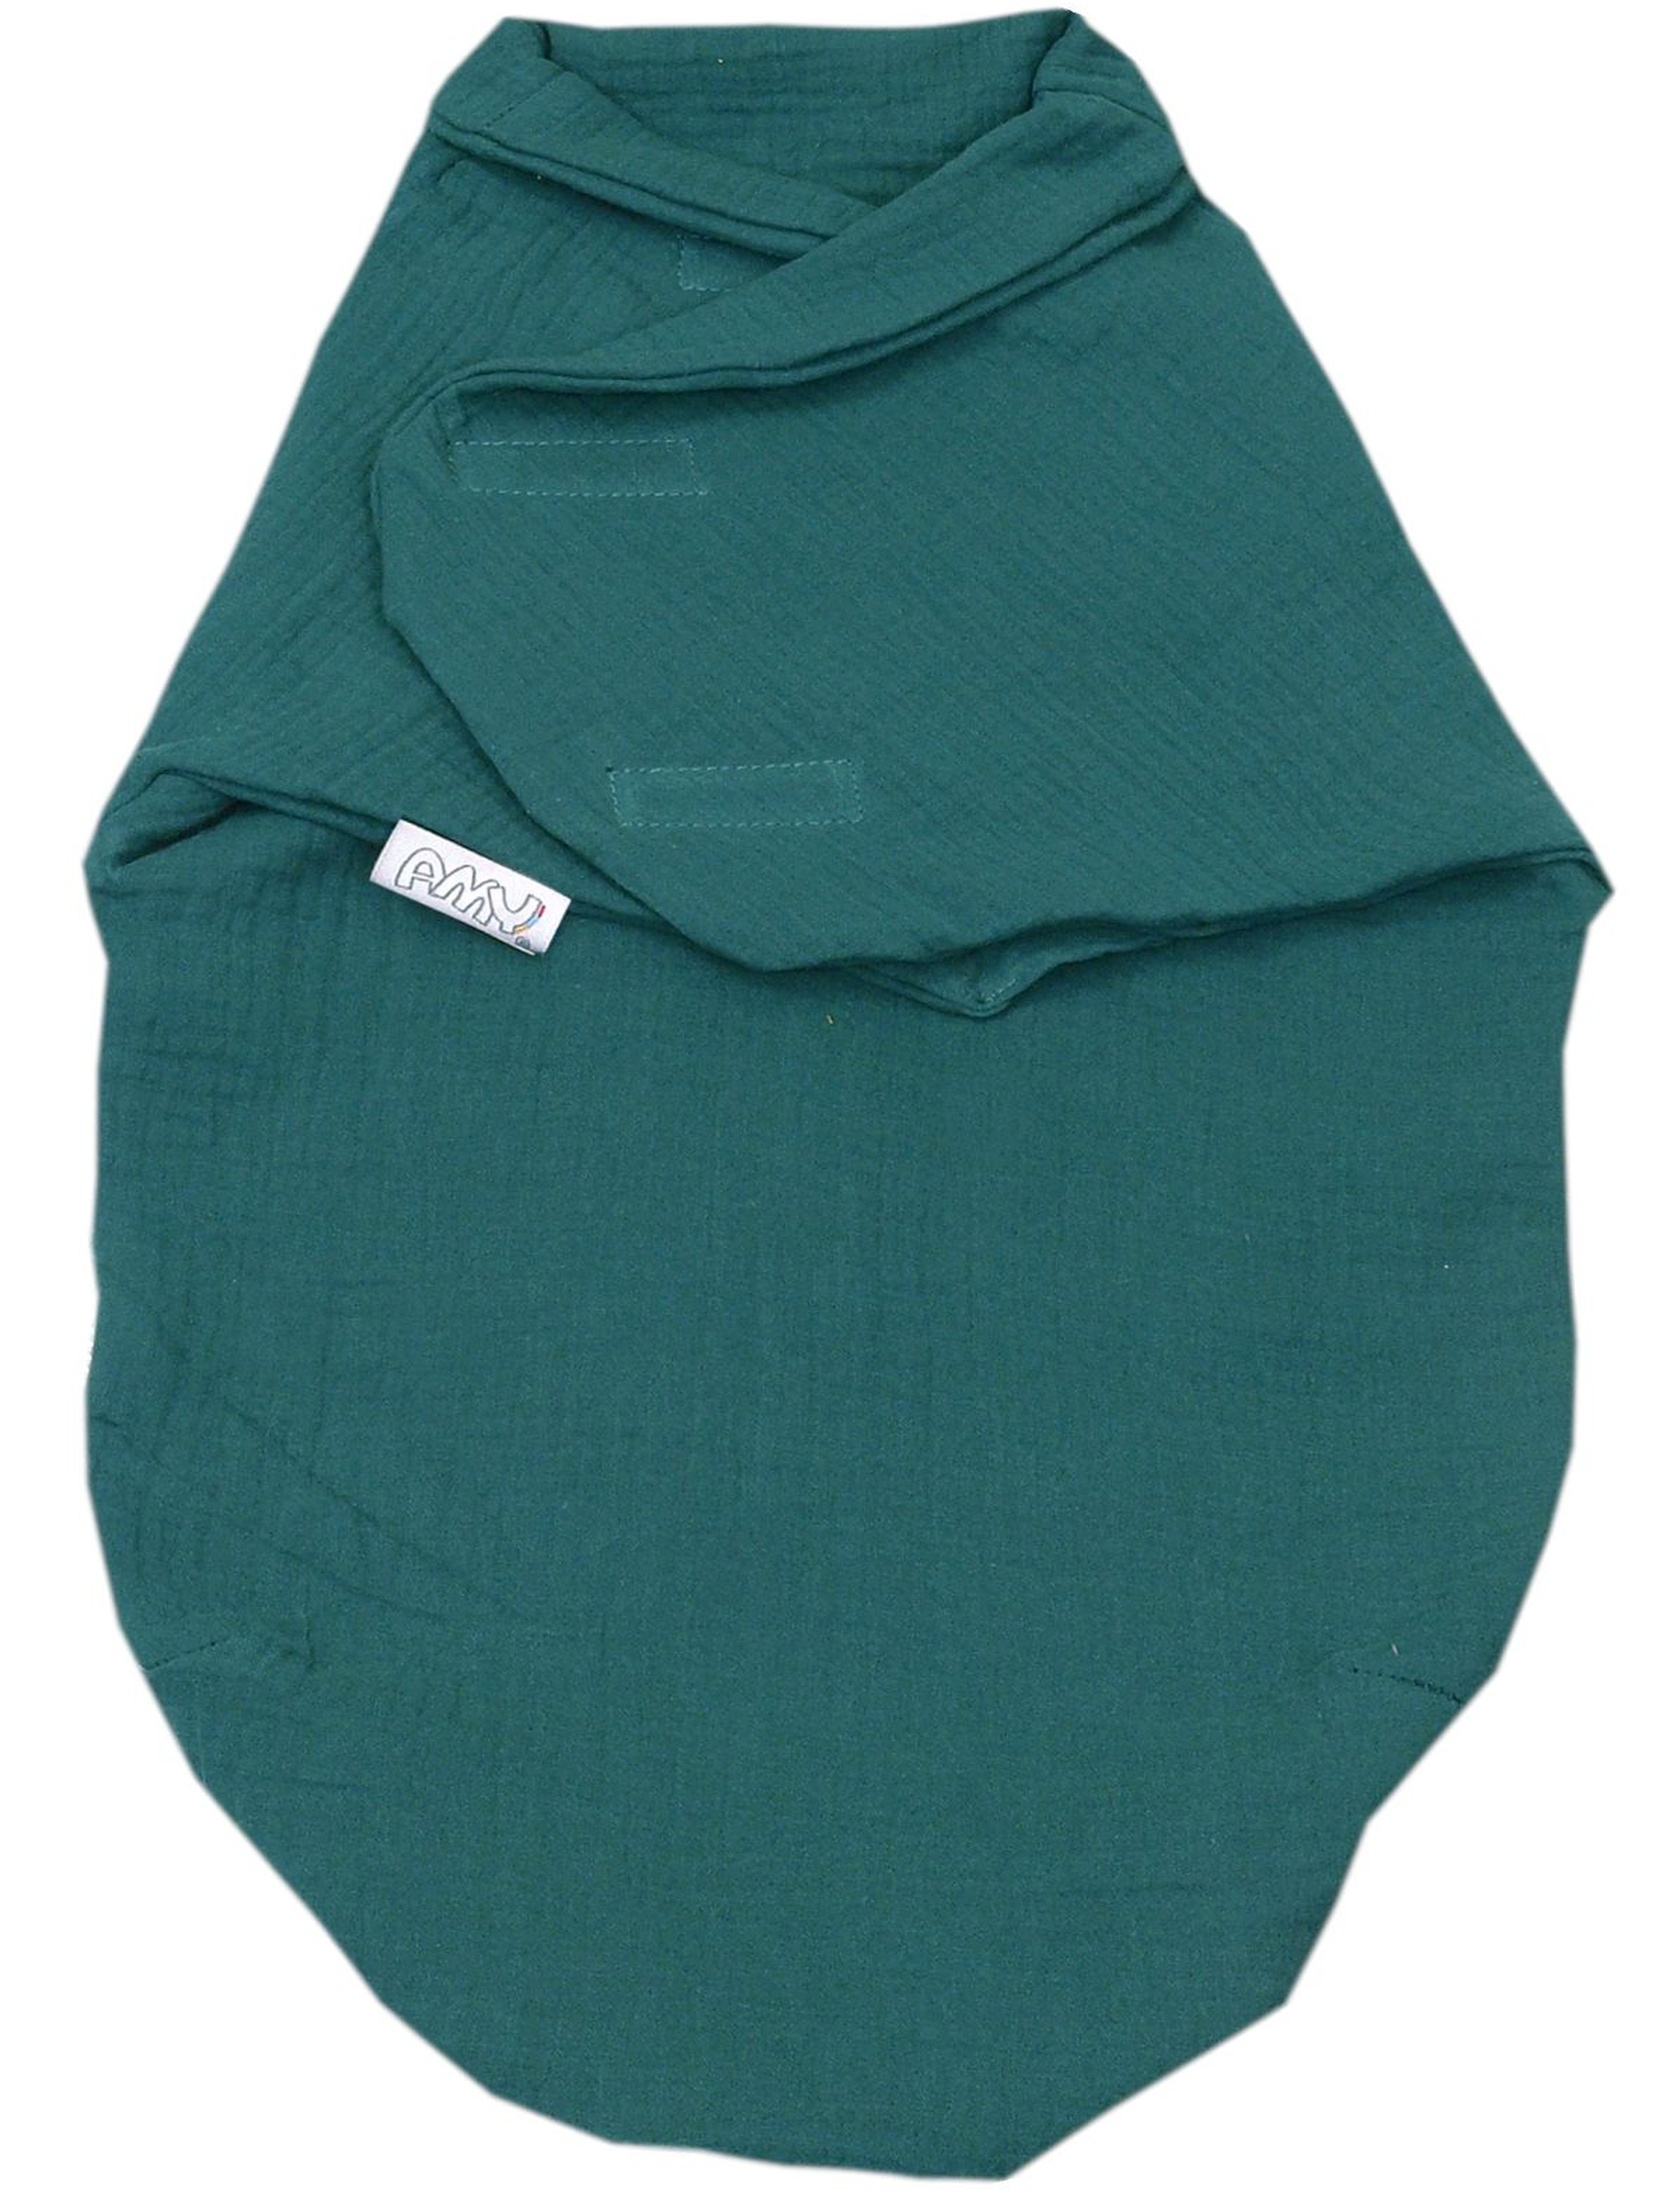 Otulacz niemowlęcy muślinowy - zielony 72x60cm